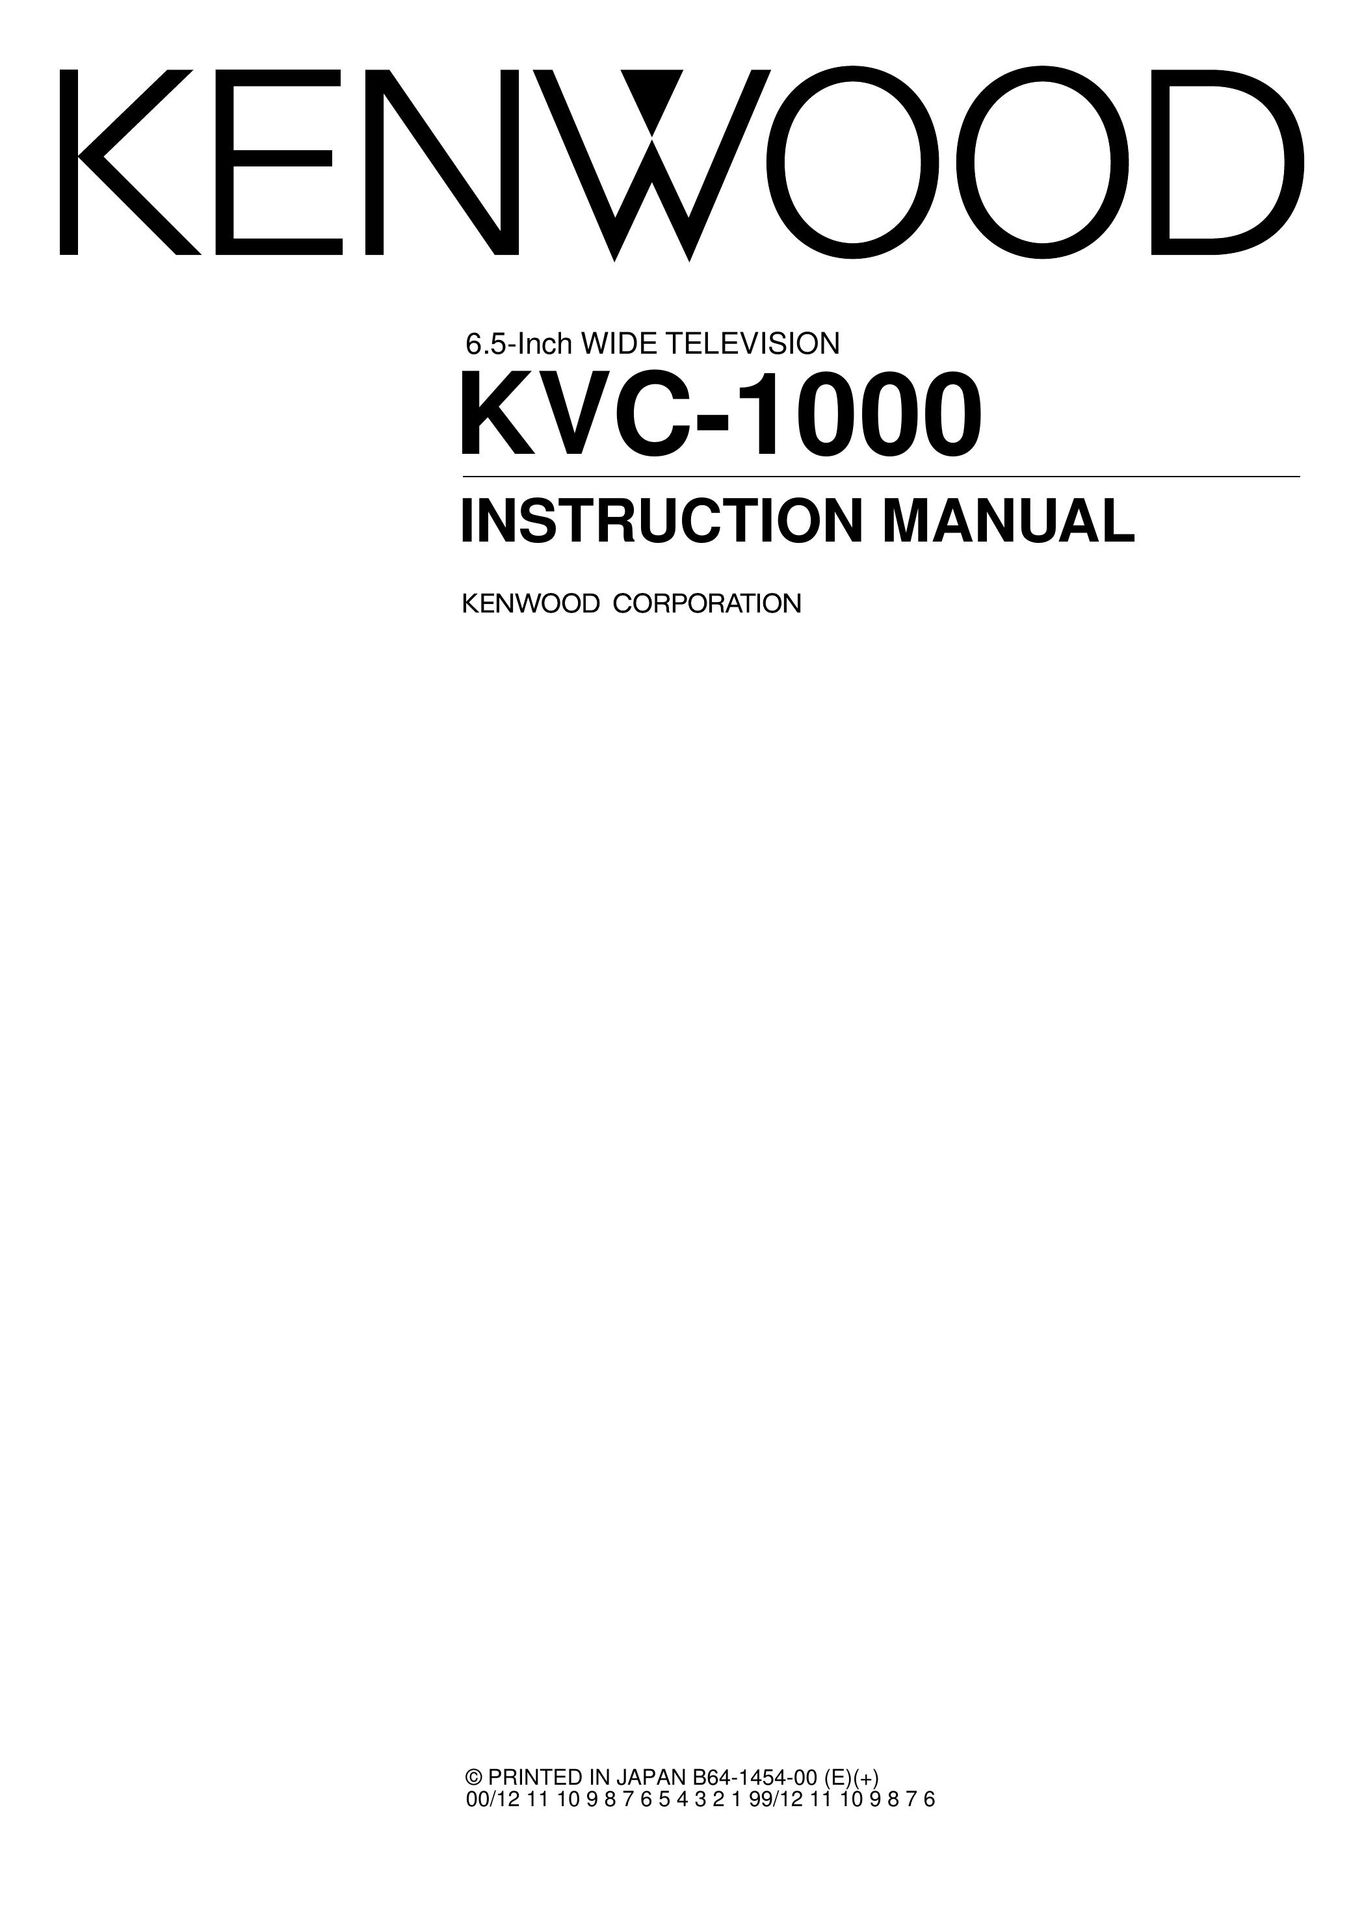 Kenwood KVC-1000 Car Satellite TV System User Manual